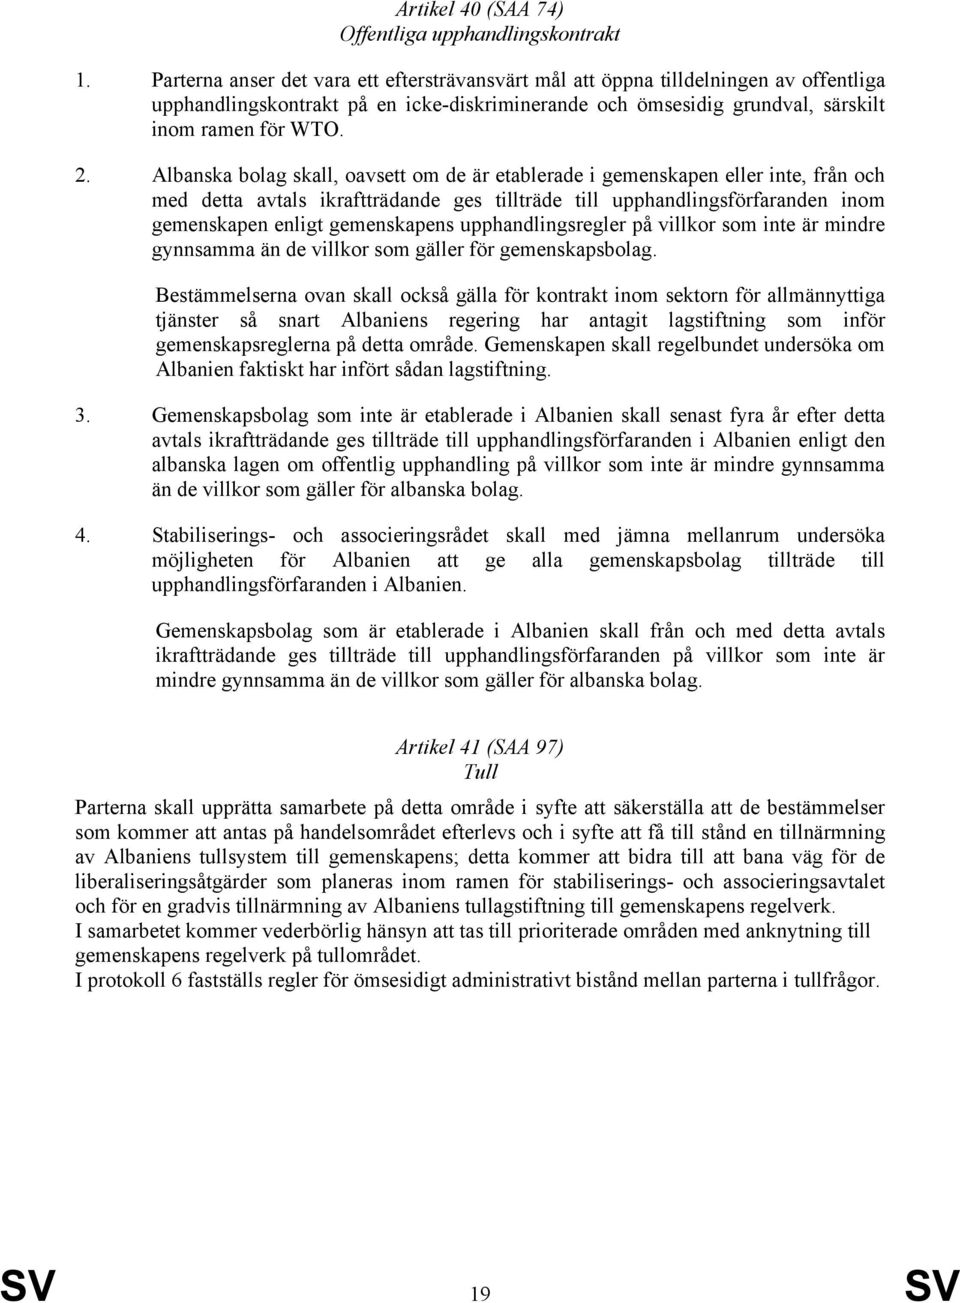 Albanska bolag skall, oavsett om de är etablerade i gemenskapen eller inte, från och med detta avtals ikraftträdande ges tillträde till upphandlingsförfaranden inom gemenskapen enligt gemenskapens